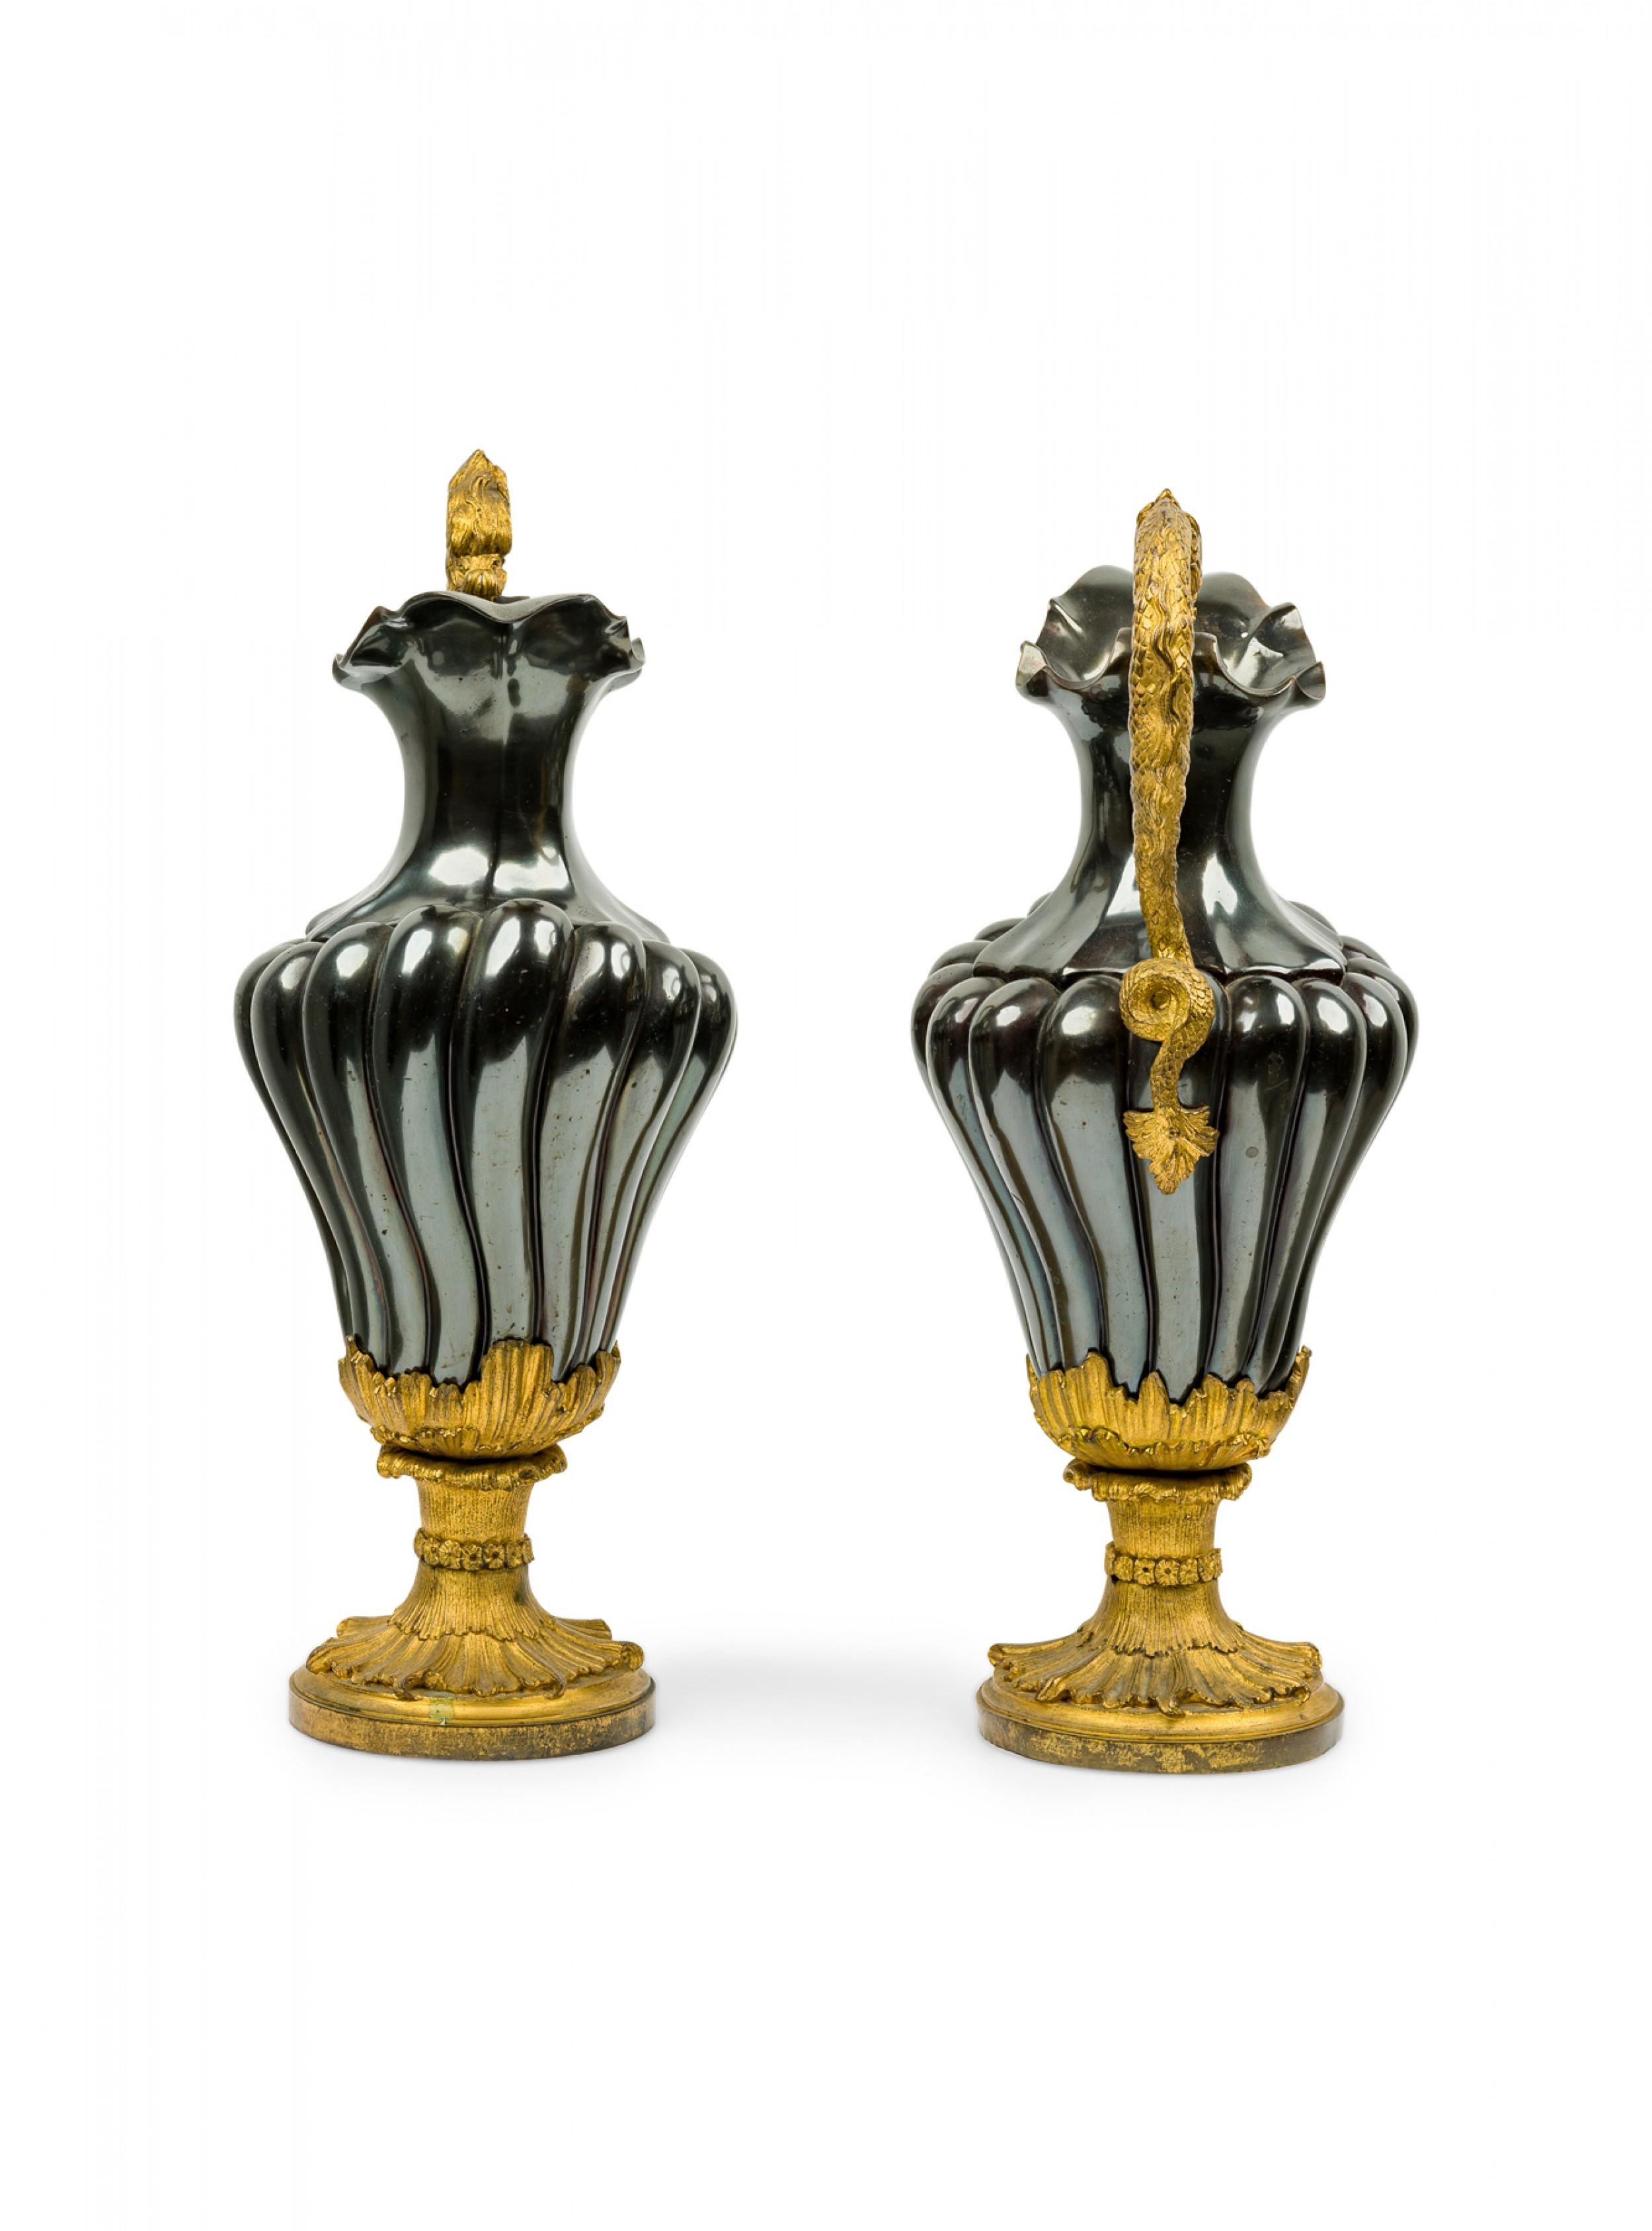 Ein Paar französischer viktorianischer Urnen mit metallisch schwarz emaillierten, geriffelten Körpern und aufwändigen, vergoldeten Bronze-Schlangengriffen, die auf einem runden Sockel mit Ormolu-Blatt-Details ruhen.